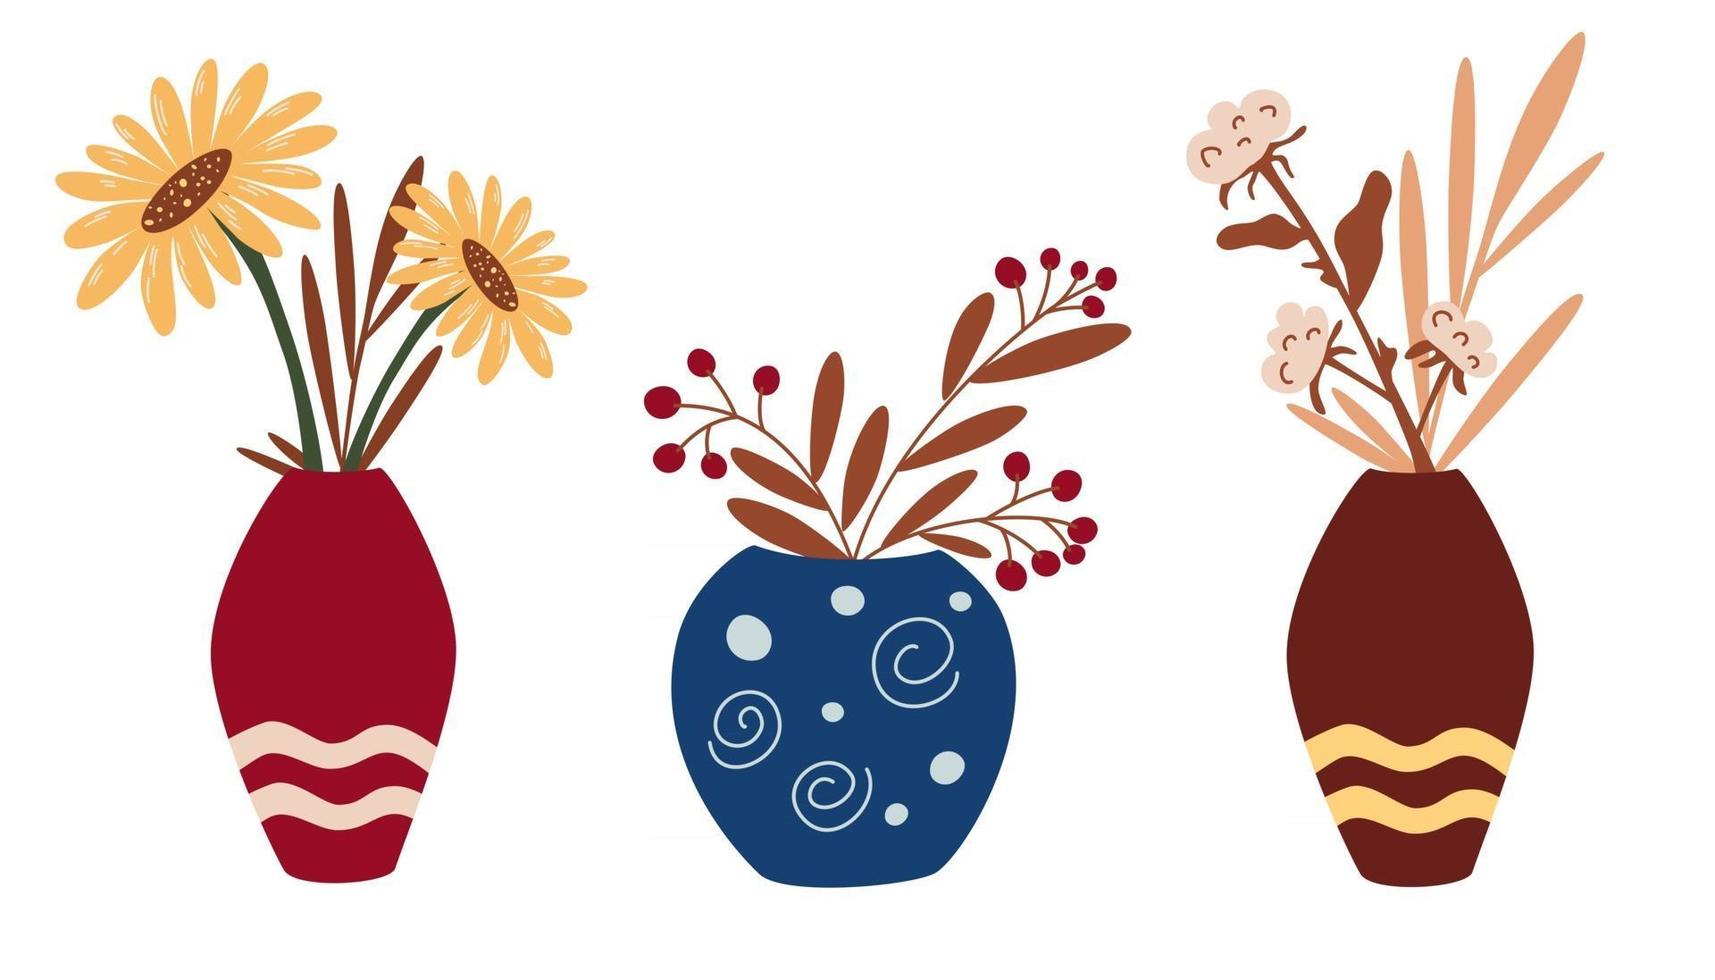 Vasen mit Trockenblumen und Herbstblumen. eine Reihe von Dekorationen für das Interieur im Boho-Stil. Sonnenblumen, Baumwolle, Trockenblumen. trendige Wohnkultur. stilvolles Designkonzept. Vektor-Illustration vektor